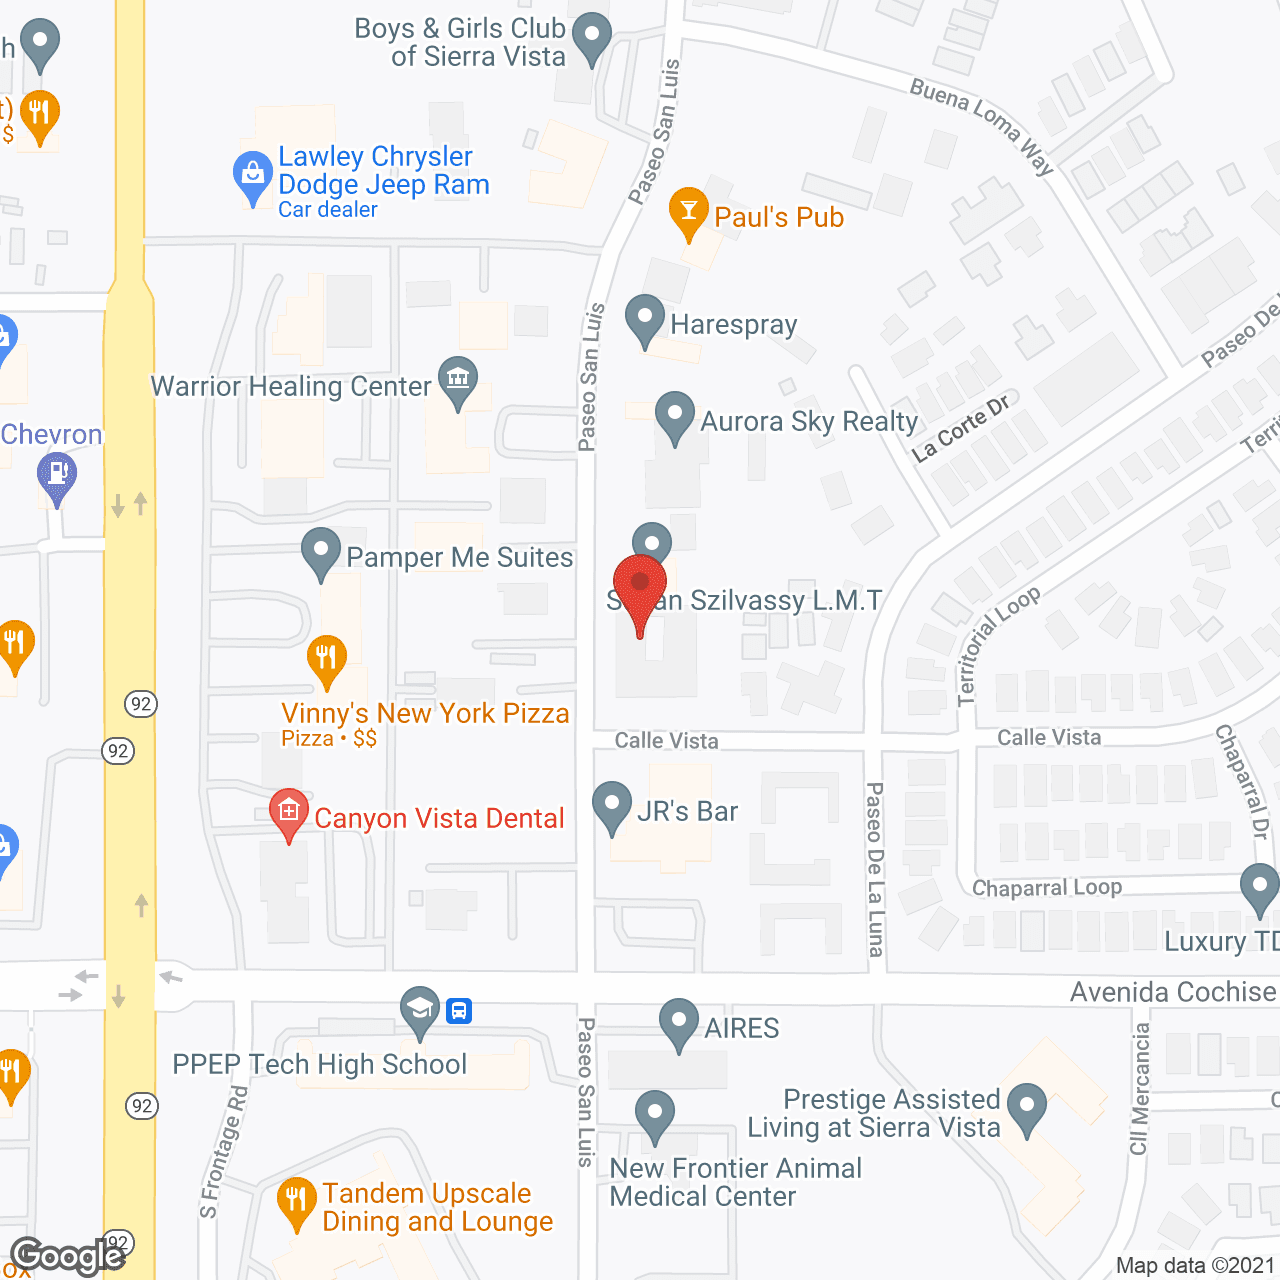 Villa Vista in google map